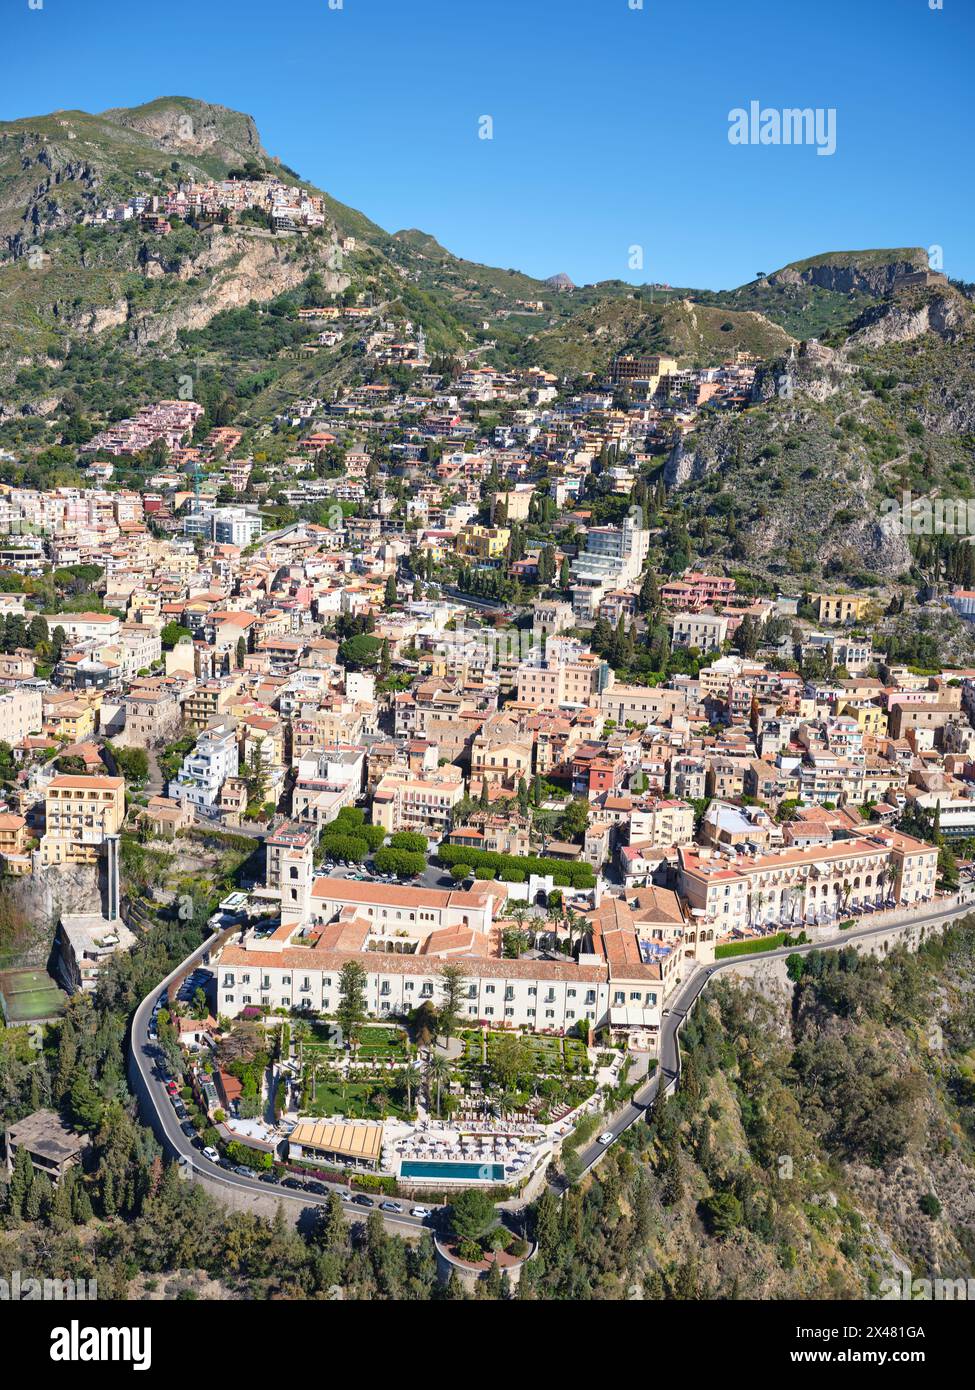 VISTA AEREA. La città turistica di Taormina, e in alto a sinistra, il paese collinare di Castelmola. Città metropolitana di Mesina, Sicilia, Italia. Foto Stock